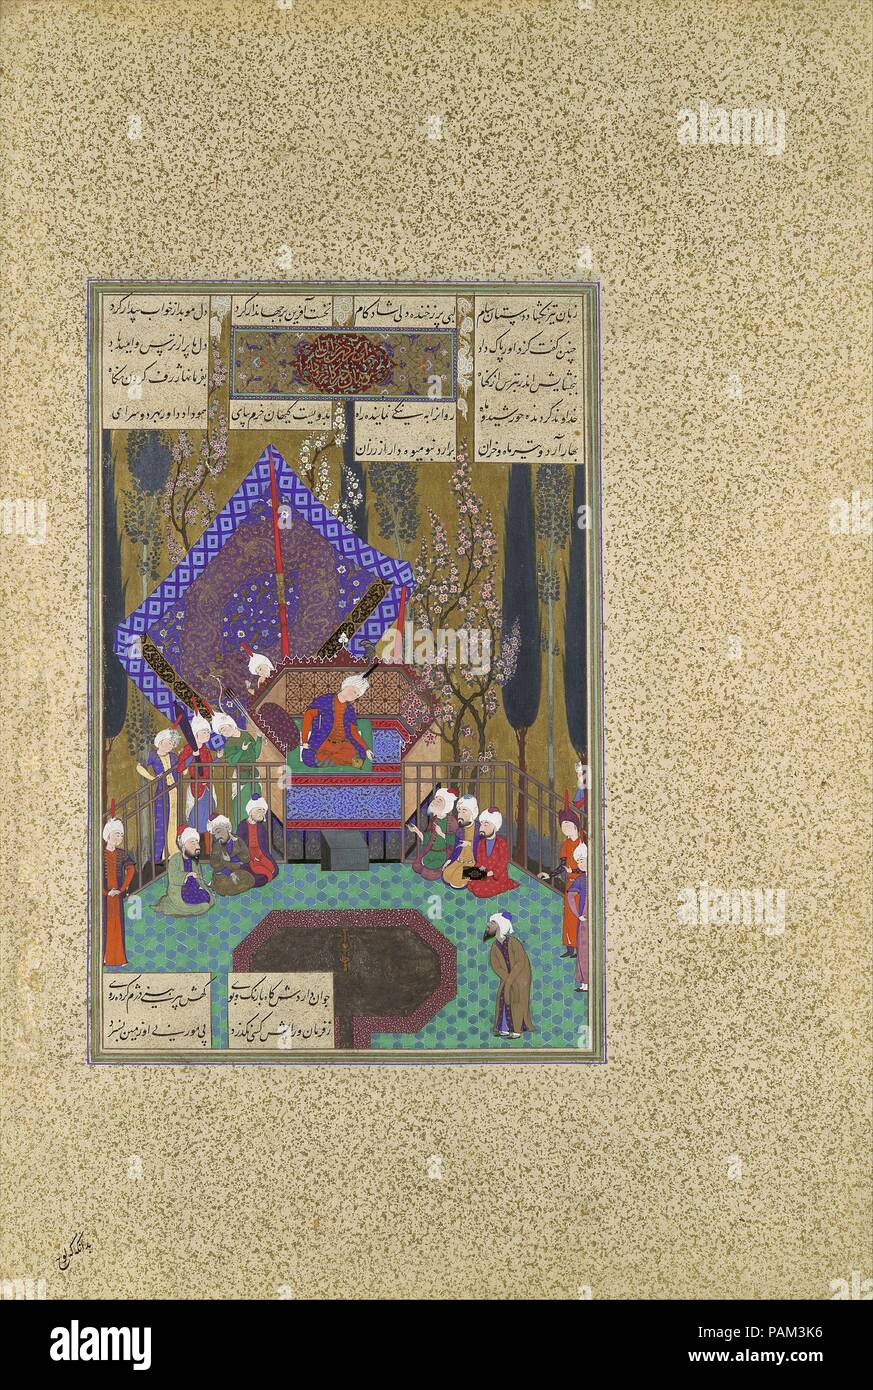 'Zal consulte les Mages', Folio 73v du Shahnama (Livre des Rois) de Shah Tahmasp. Artiste : peinture attribuée à Muhammad Sultan active (première moitié du 16e siècle) , assisté par 'Abd al-'Aziz. Auteur : Abu'l Qasim Firdausi (935-1020). Dimensions : Peinture : H. 11 1/16 x 7 1/4 in. W. (H. 28,1 x 18,4 cm) W. Page entière : H. 18 9/16 x 12 1/2 in. W. (H. 47,1 x 31,8 cm.) W. Directeur de l'atelier : Sultan Muhammad (active première moitié 16e siècle). Date : ca. 1530-35. Dans cette peinture, Zal est représenté intronisé comme il consulte ses mages Zoroastriens, ou des sages, sur la façon de gagner l'approbation de son père de se marier Banque D'Images